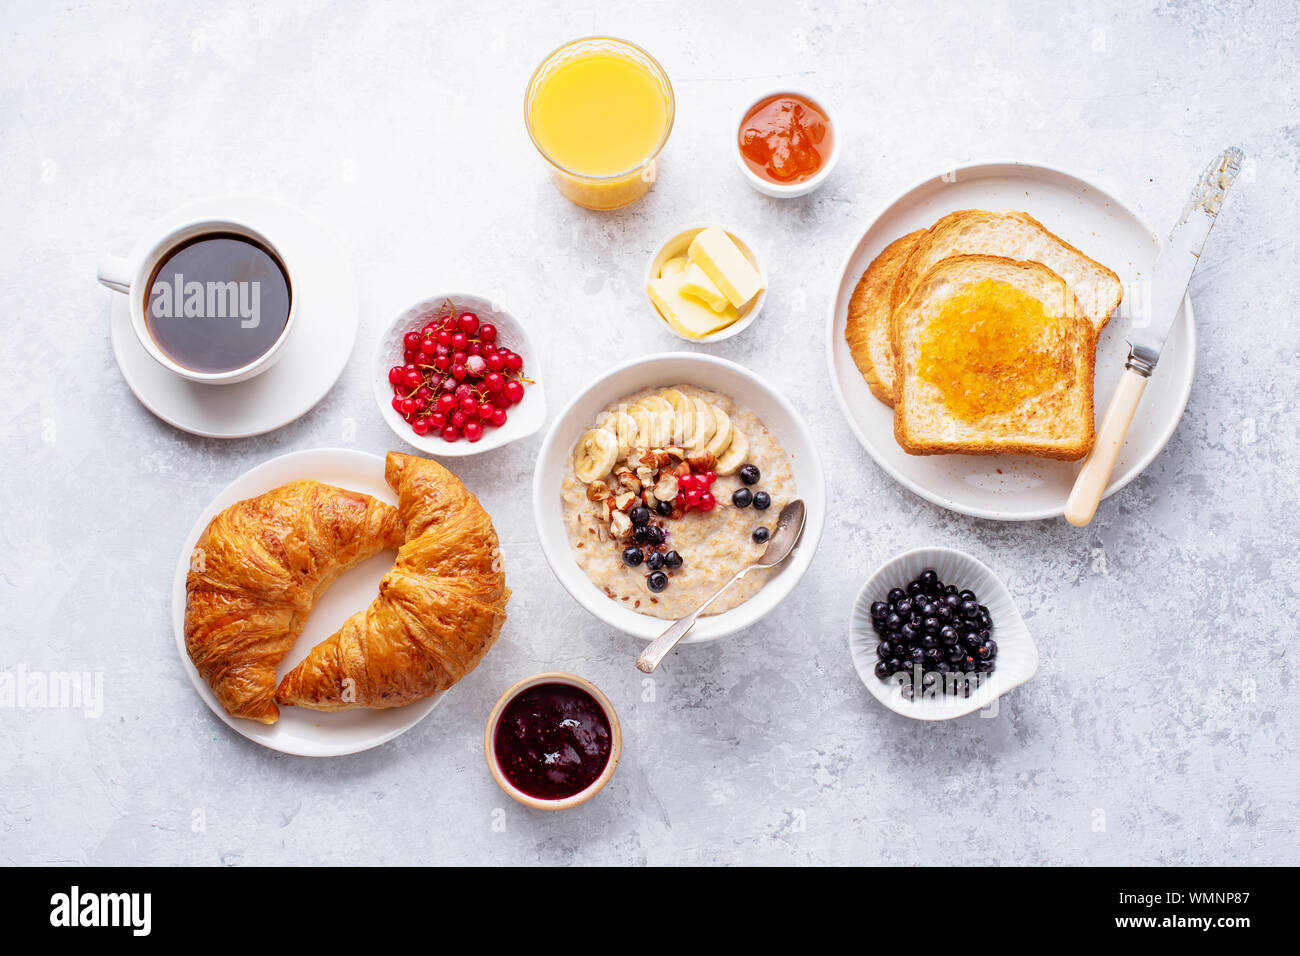 Le petit-déjeuner avec du gruau avec des baies et des noix, des croissants, des toasts avec du beurre et de la confiture, du café et du jus d'orange Banque D'Images